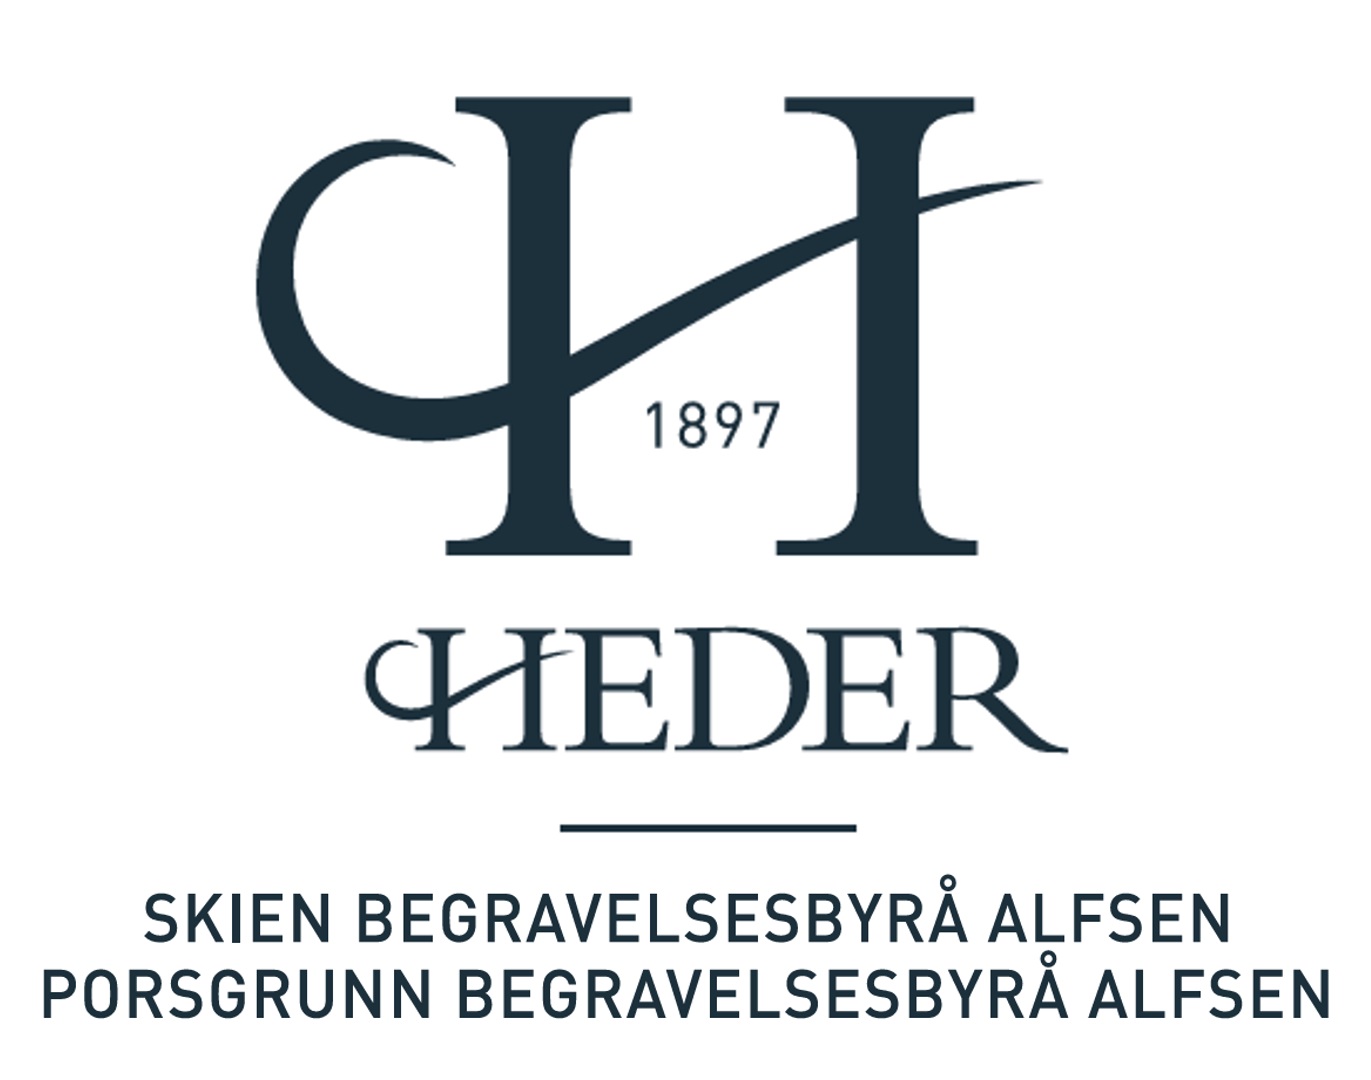 Heder - Skien/Porsgrunn begravelsesbyrå